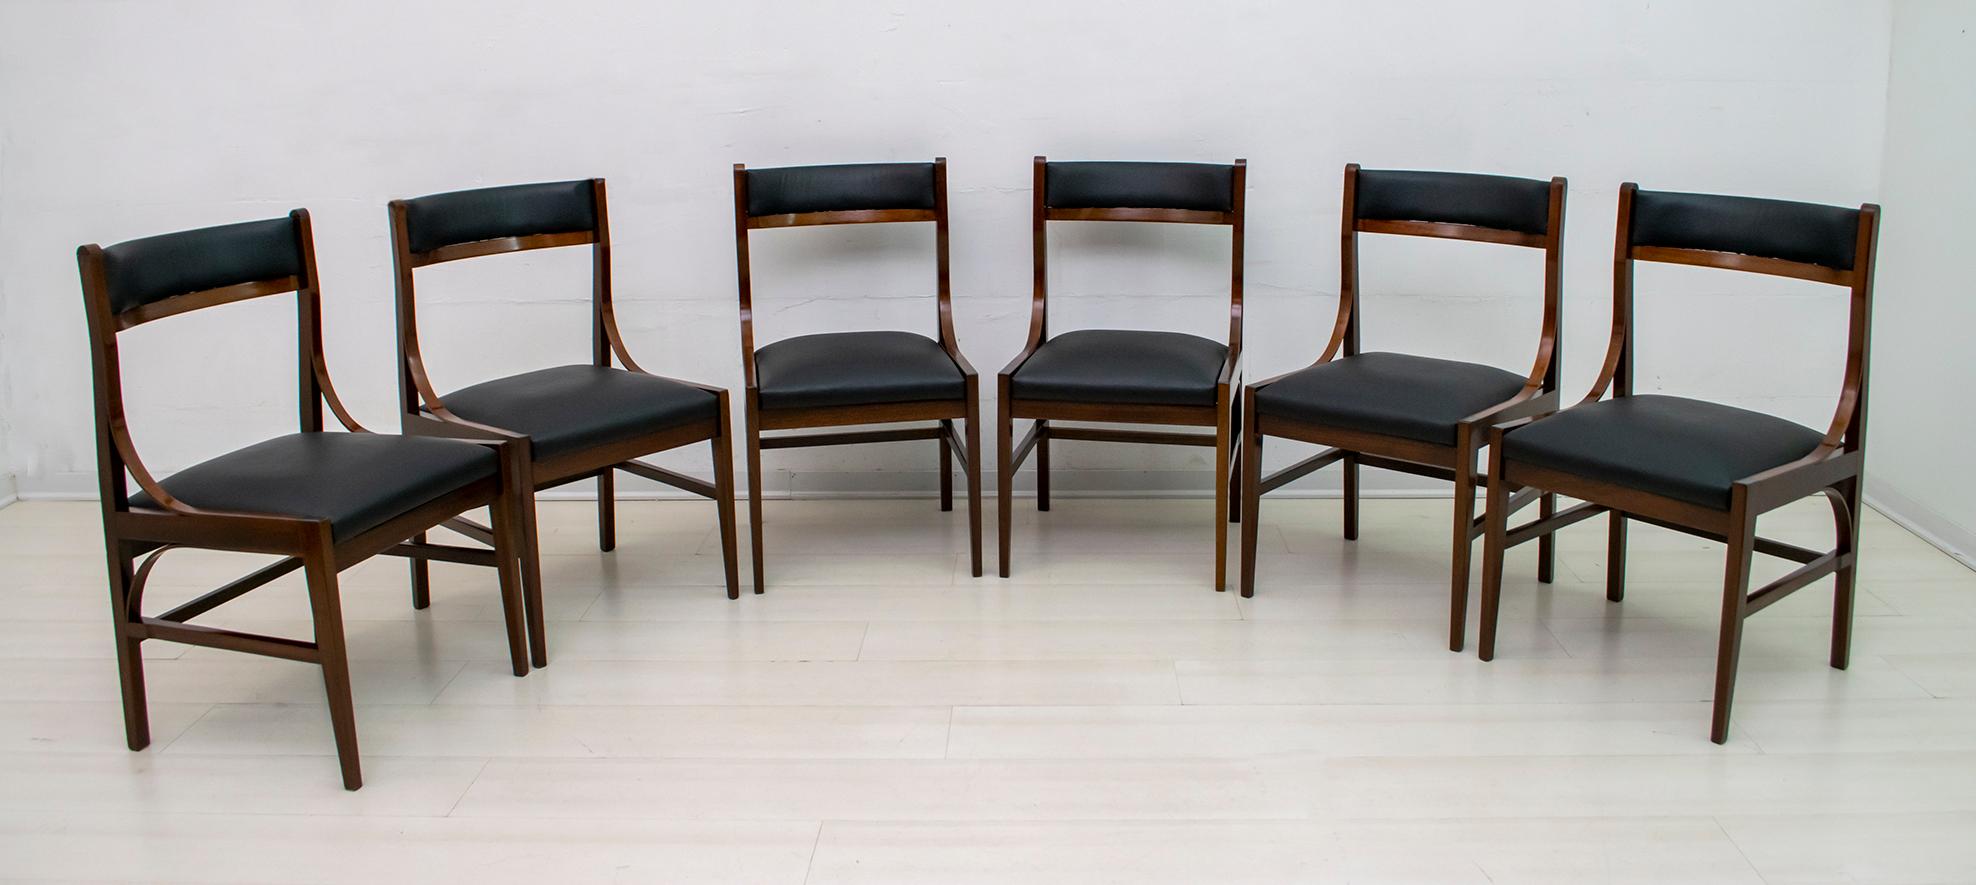 Six chaises mod. 110 de Ico Parisi. Italie, 1961. Produit par les Fils d'Amedeo Cassina, Meda. Bois d'acajou.
Les chaises ont été polies à la gomme-laque et ont un nouveau revêtement en cuir.